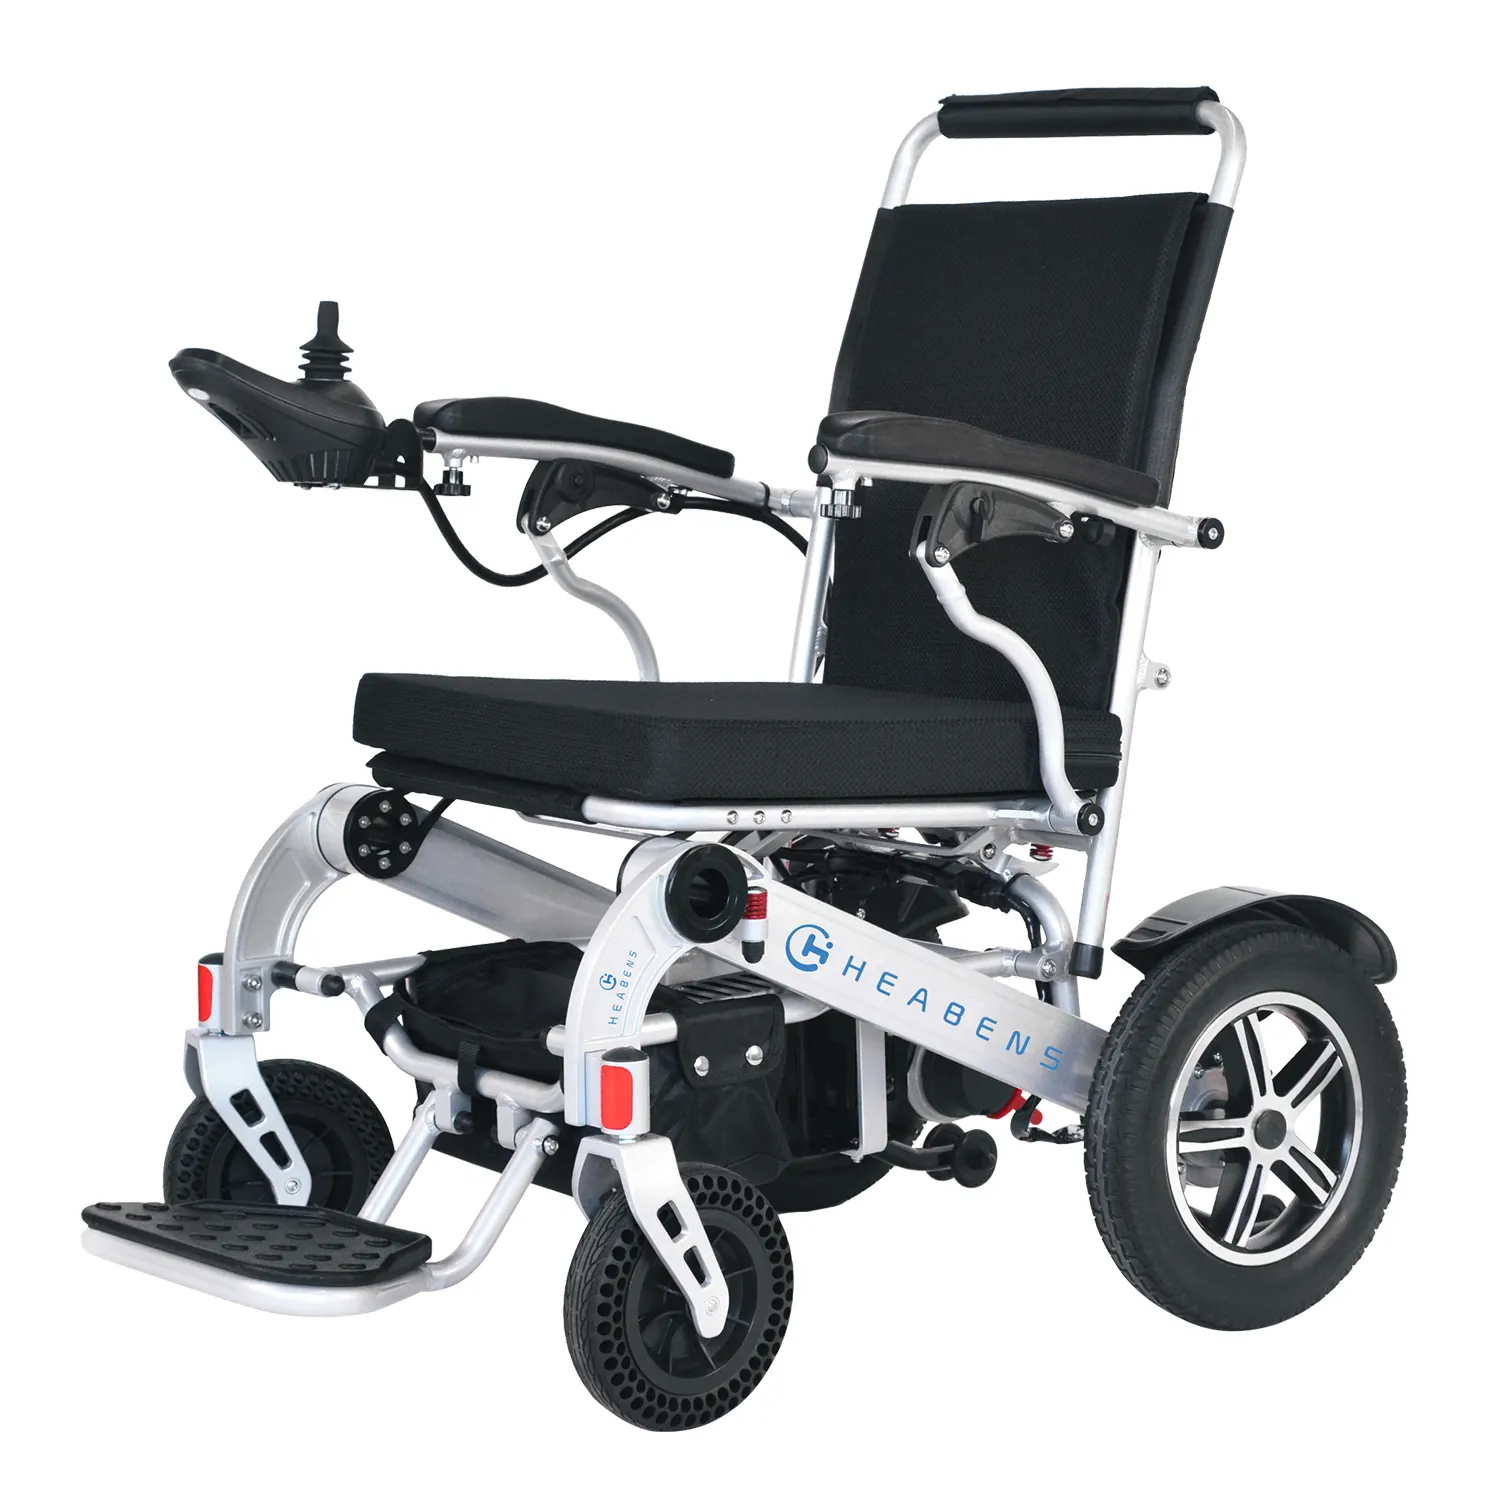 HEABENS CE ISO OEM/ODM silla de ruedas deportiva 150KG rodamiento ligero control remoto silla de ruedas eléctrica